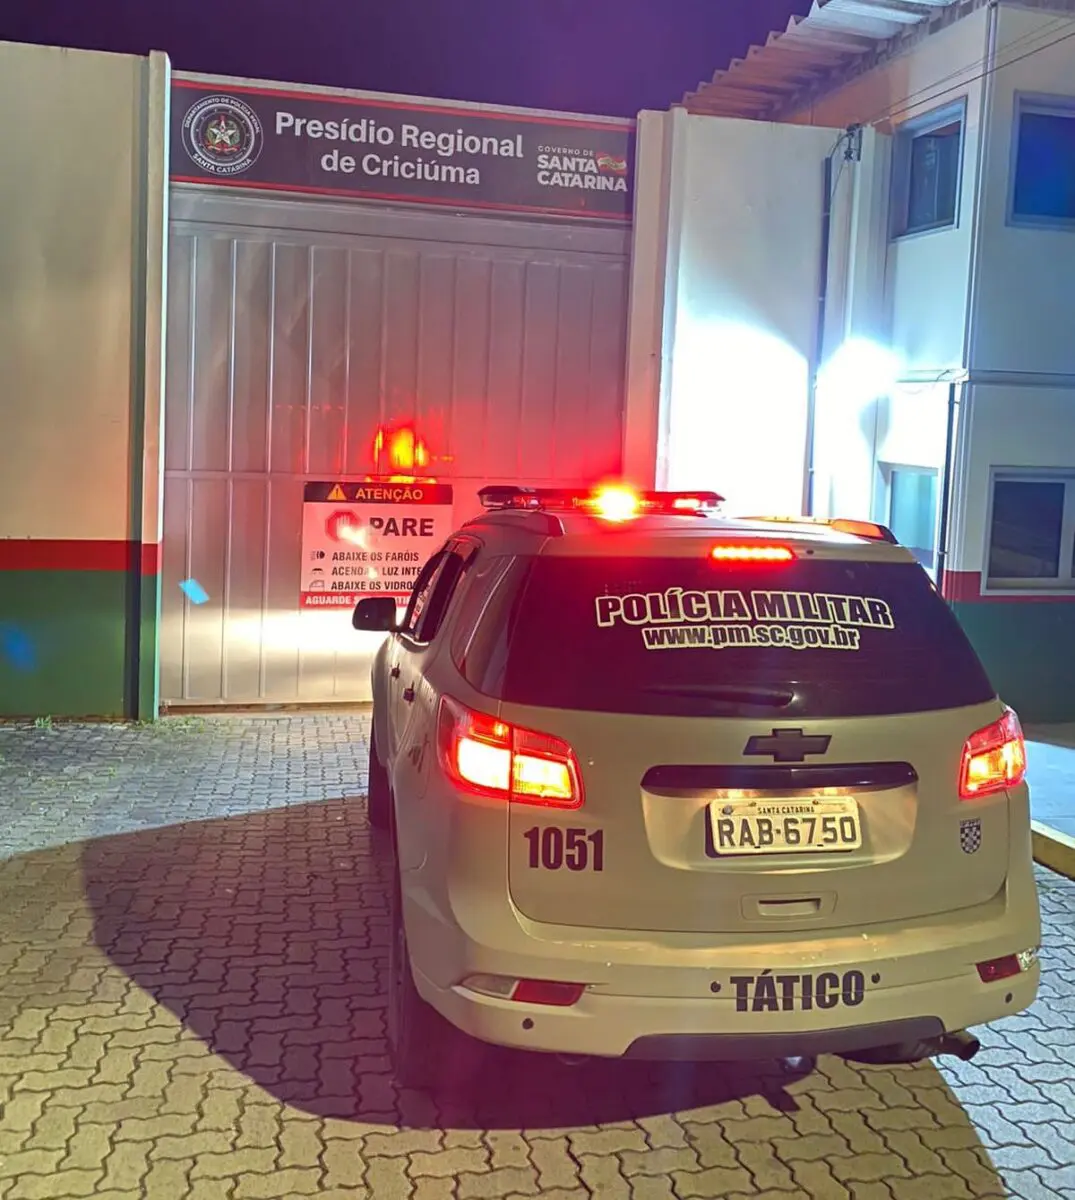 Neoveneziano foragido do sistema prisional é capturado pelo Tático em Criciúma